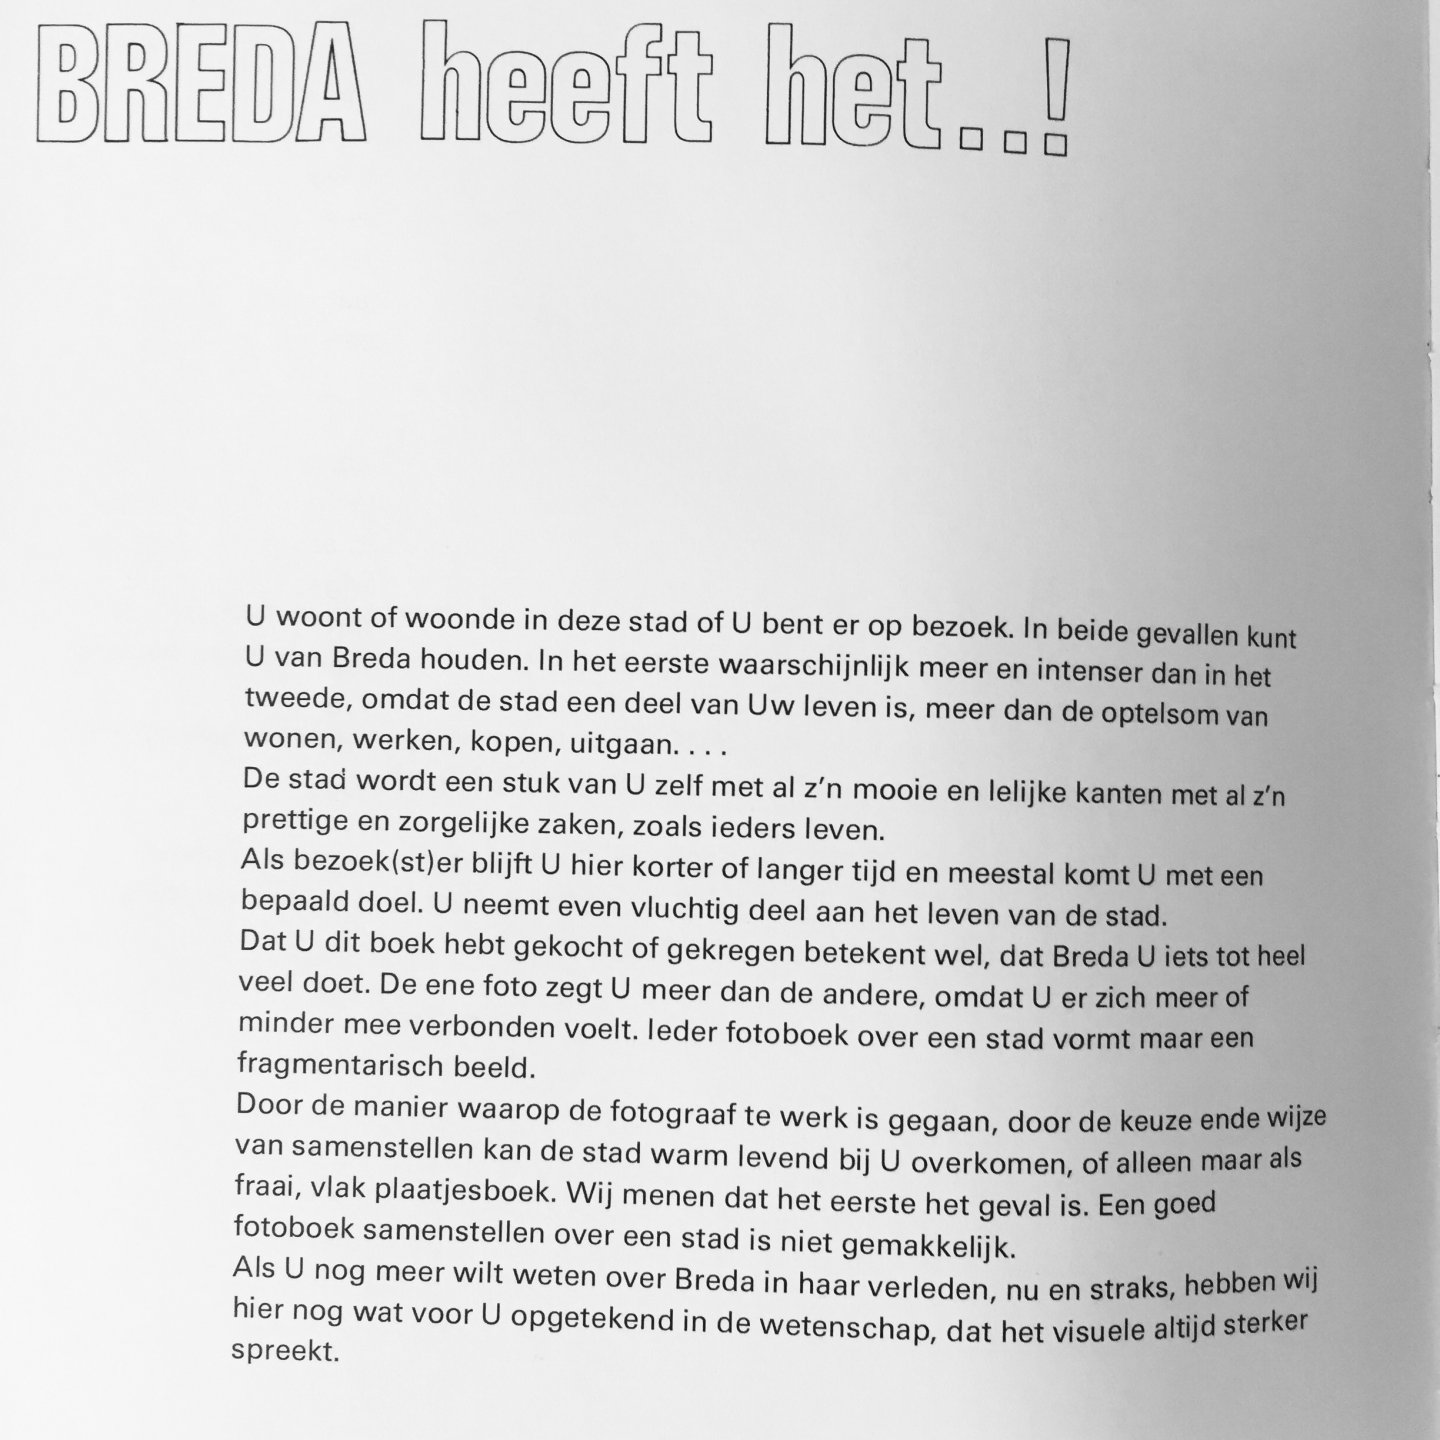 Gemeentevoorlichting Gemeentearchivaris Breda. - Breda heeft het ..!  Voorwoord Burgemeester W. Merkx.